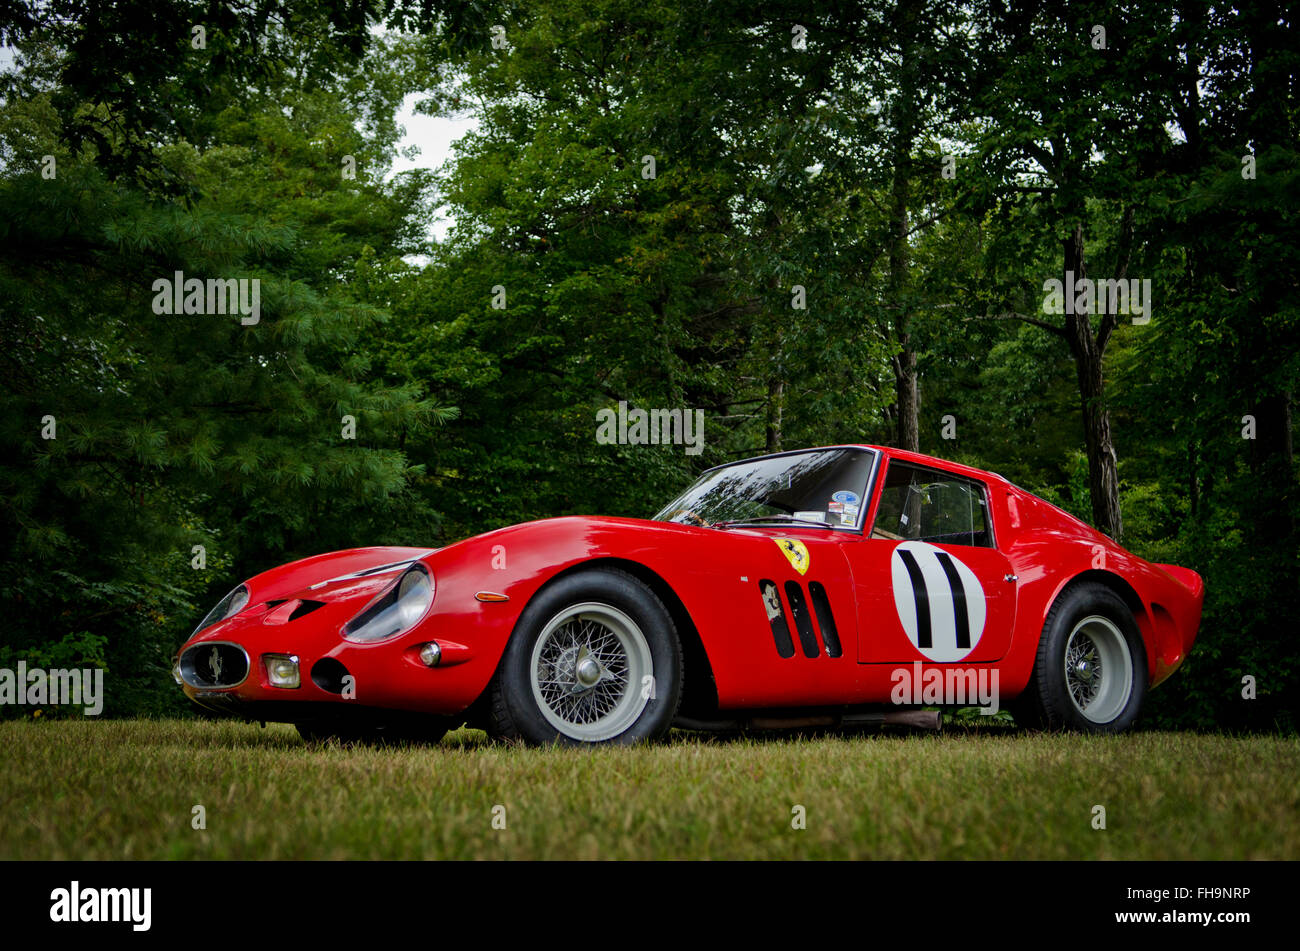 1962 Ferrari 250 GTO Banque D'Images